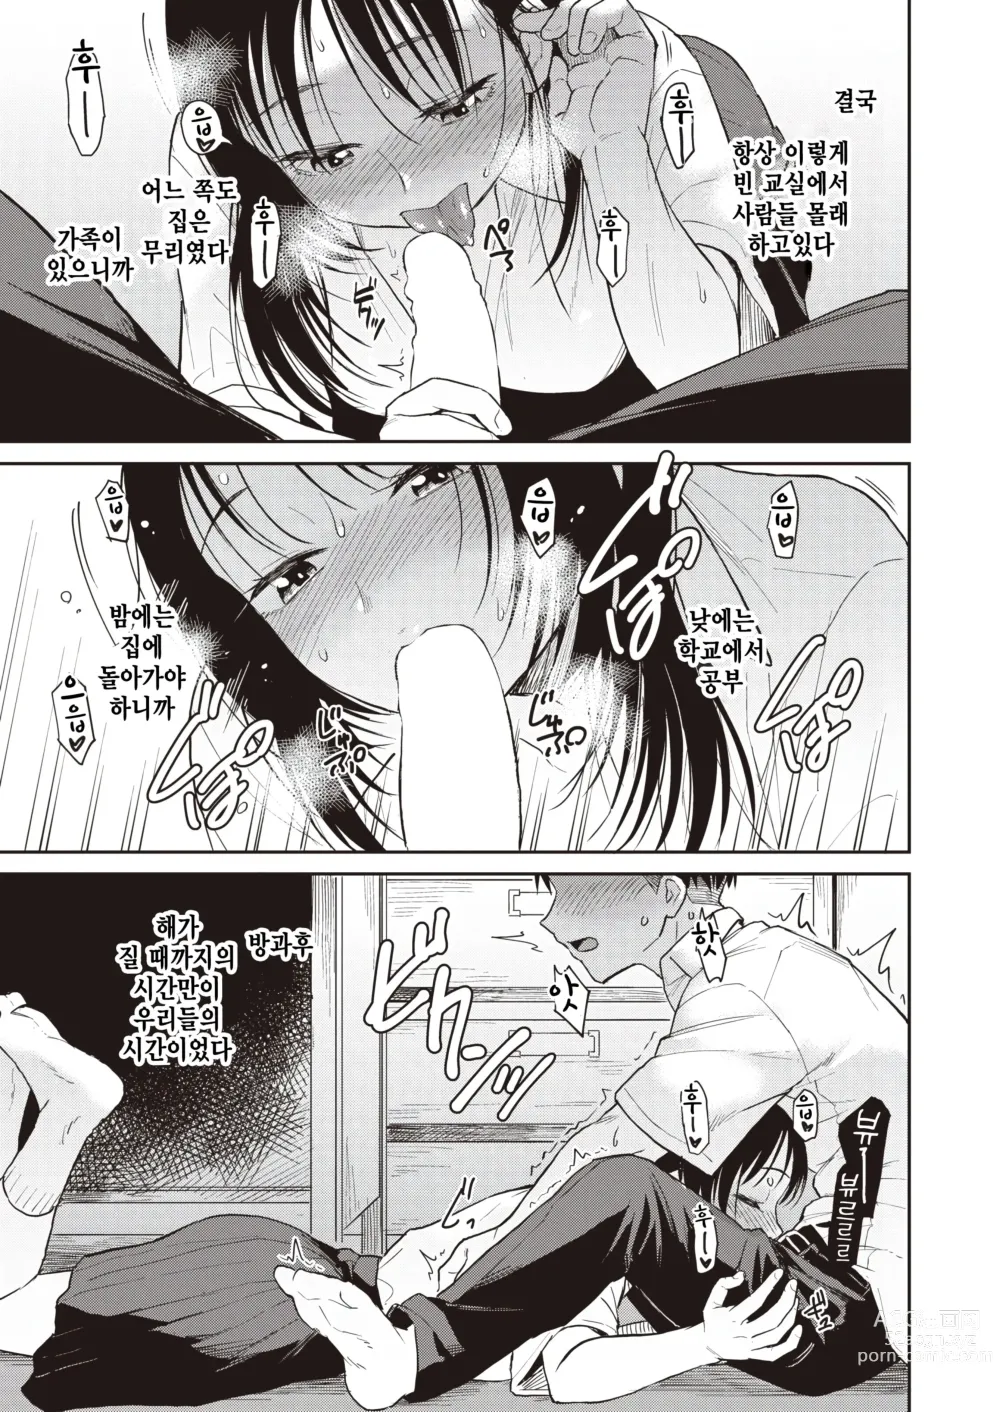 Page 3 of manga Warui Ko no Yoru